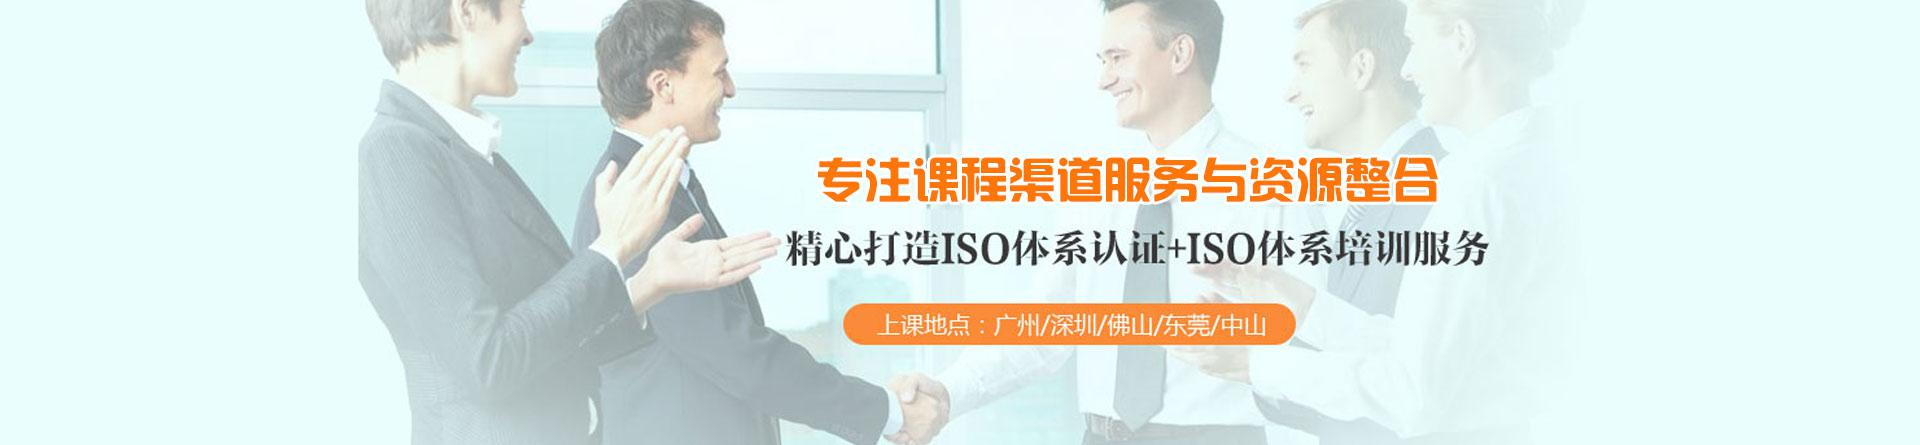 廣州方普ISO培訓機構